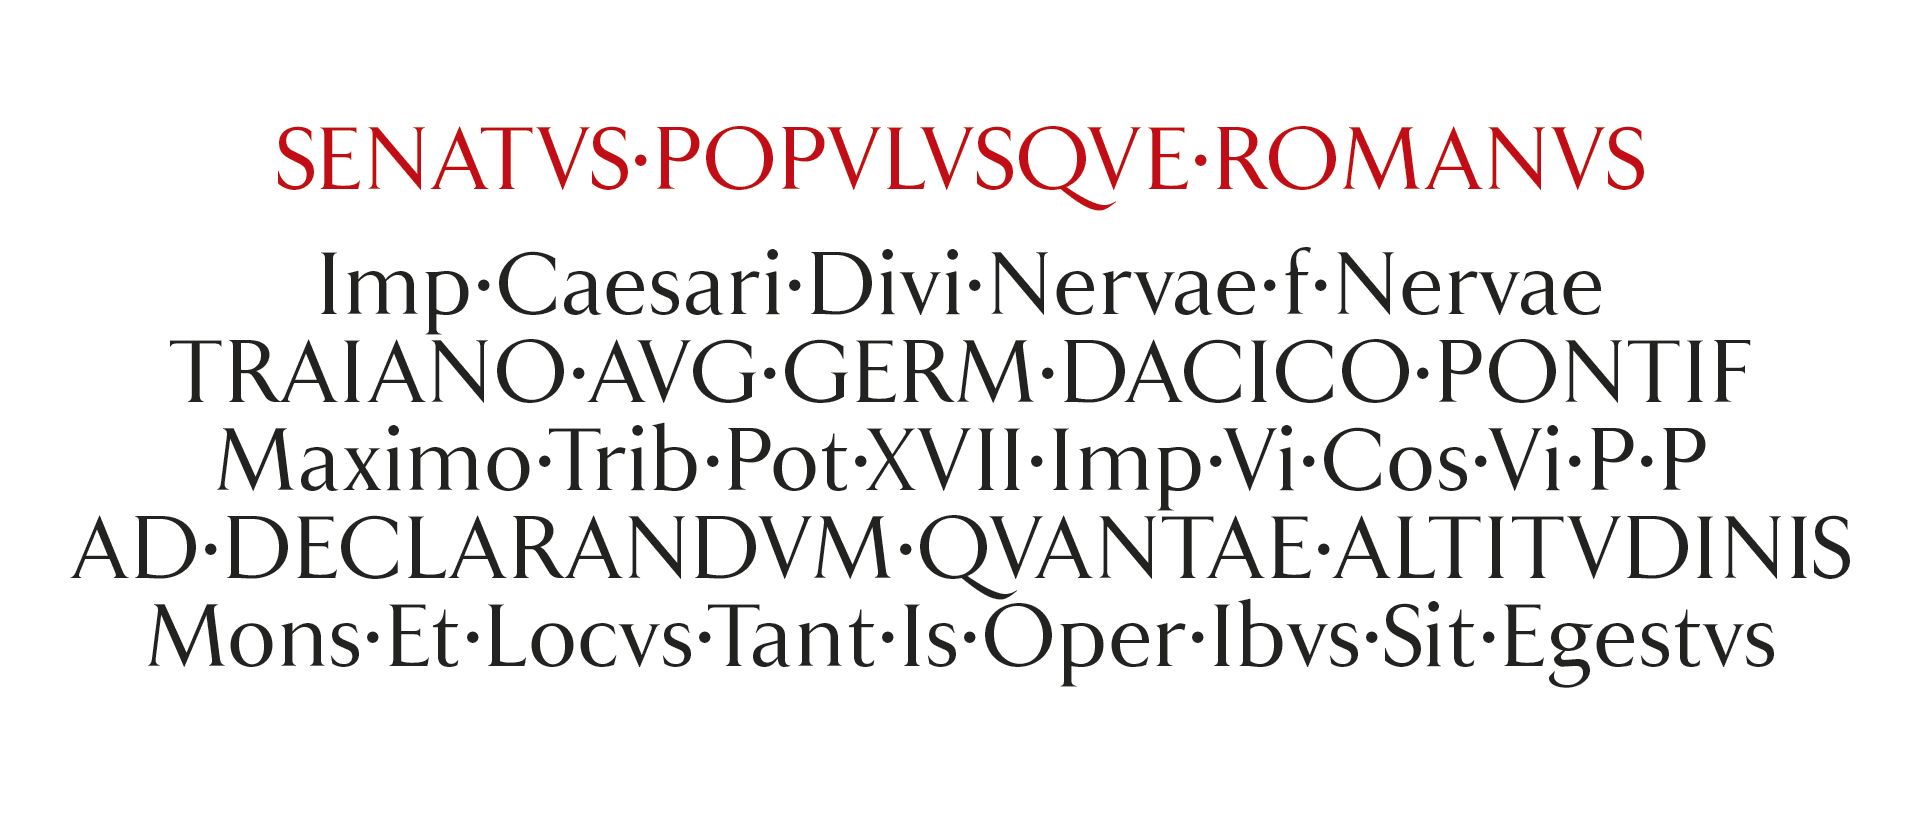 Textos en latín mayúscula y minúscula de la tipografía a medida Porcelanosa